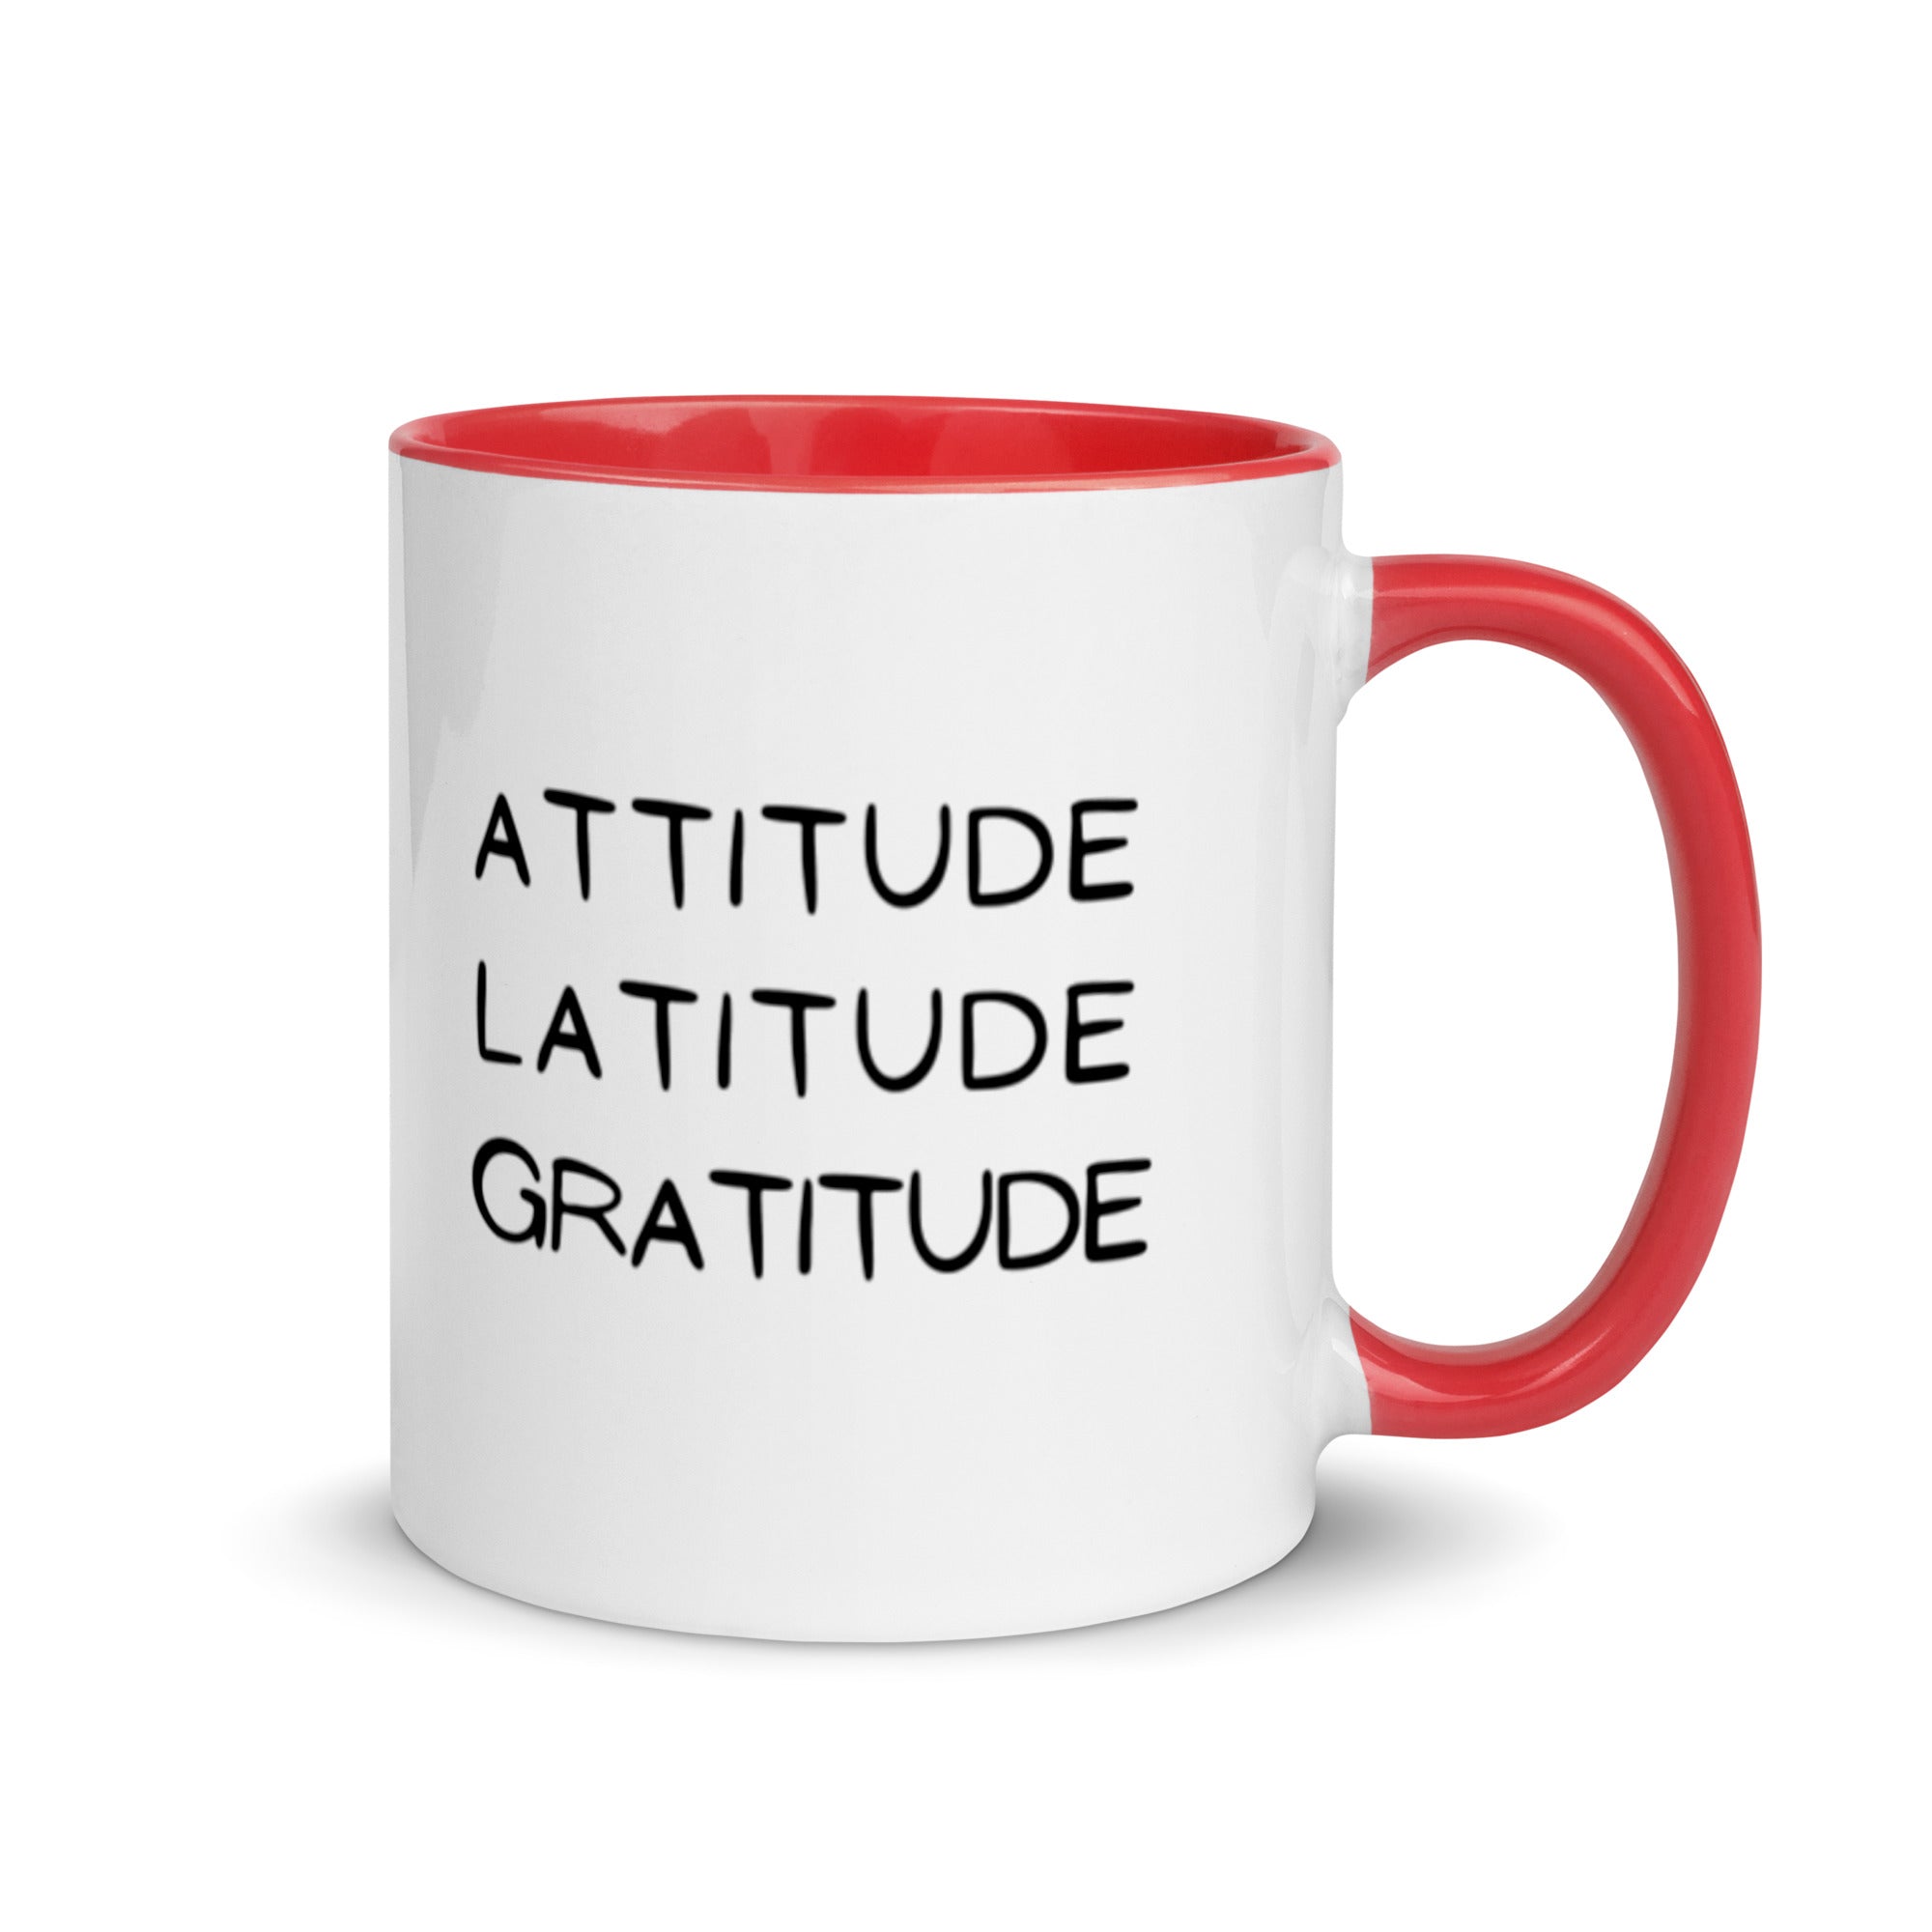 Attitude - Mug with Color Inside